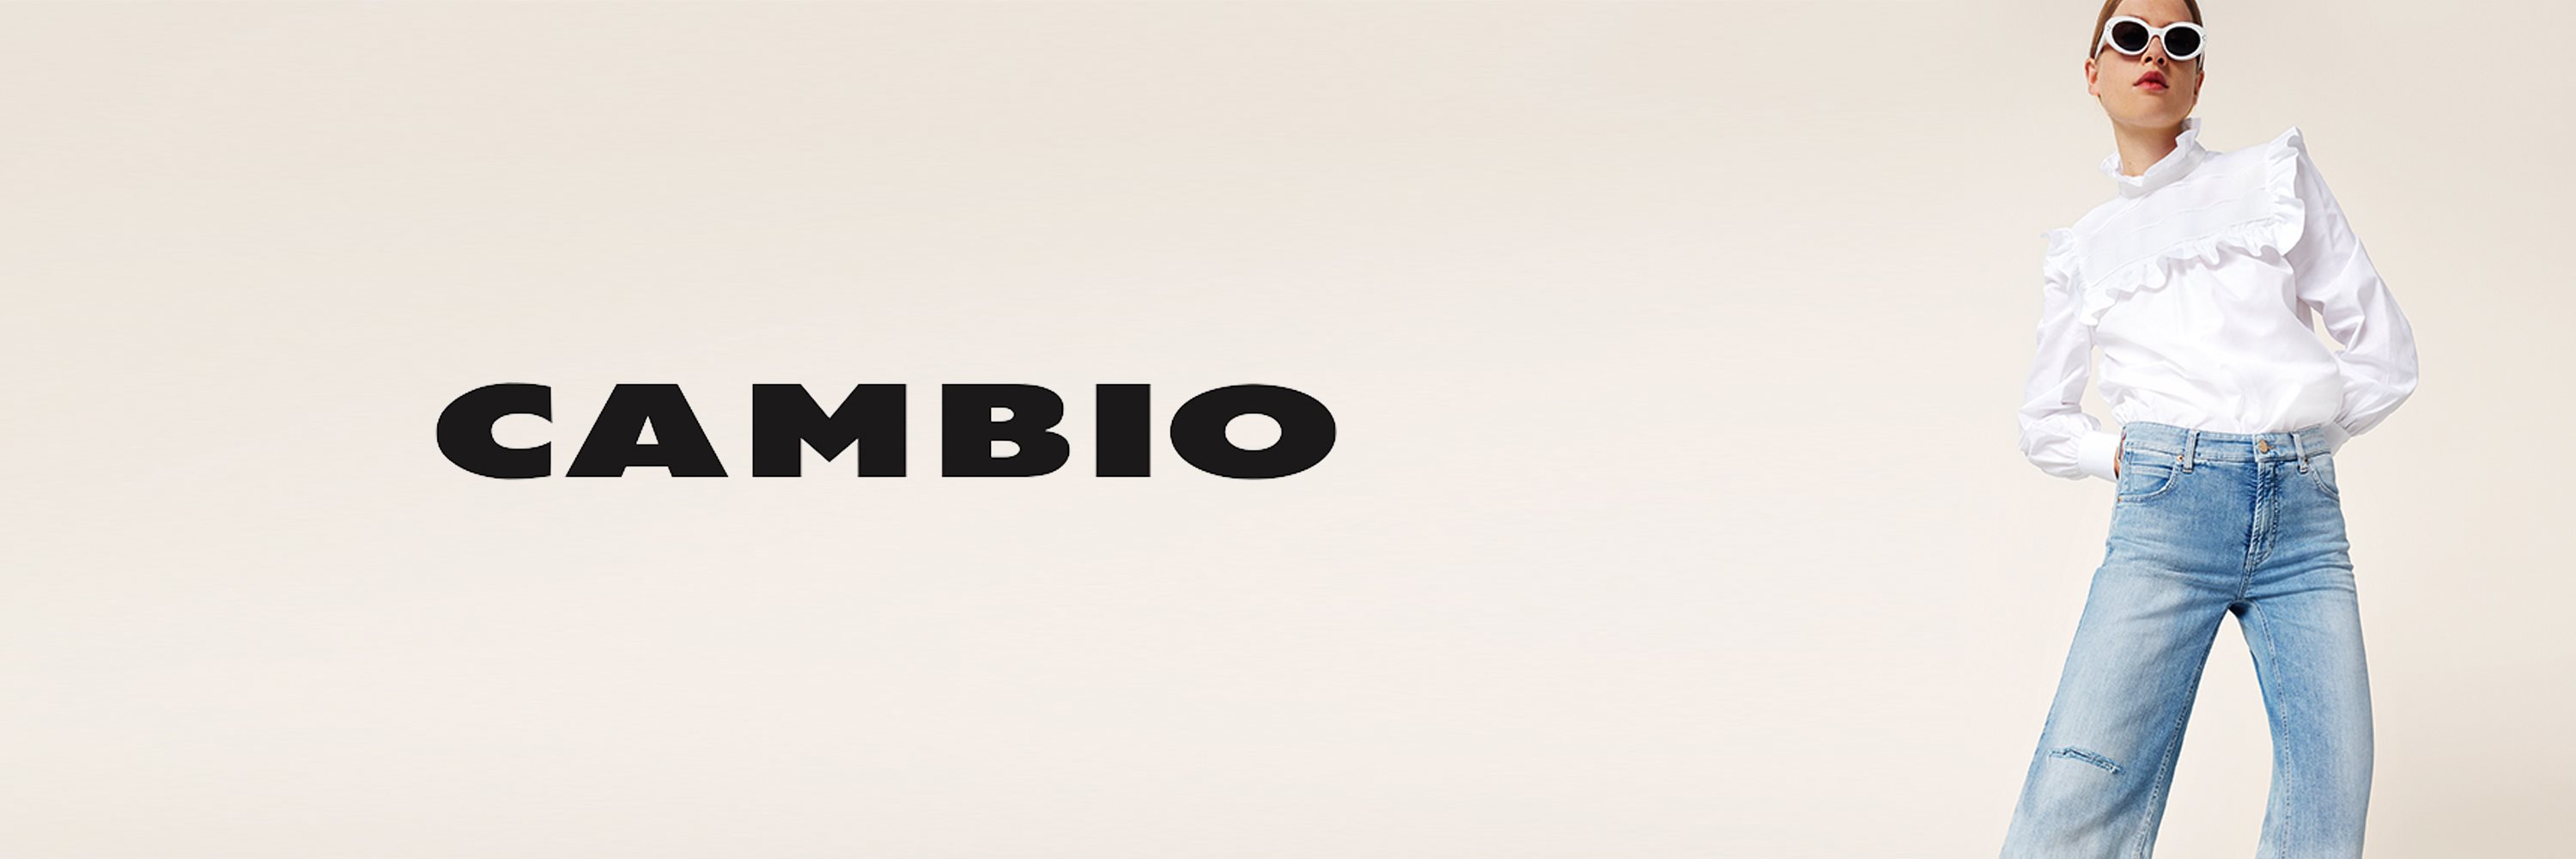 CAMBIO-1